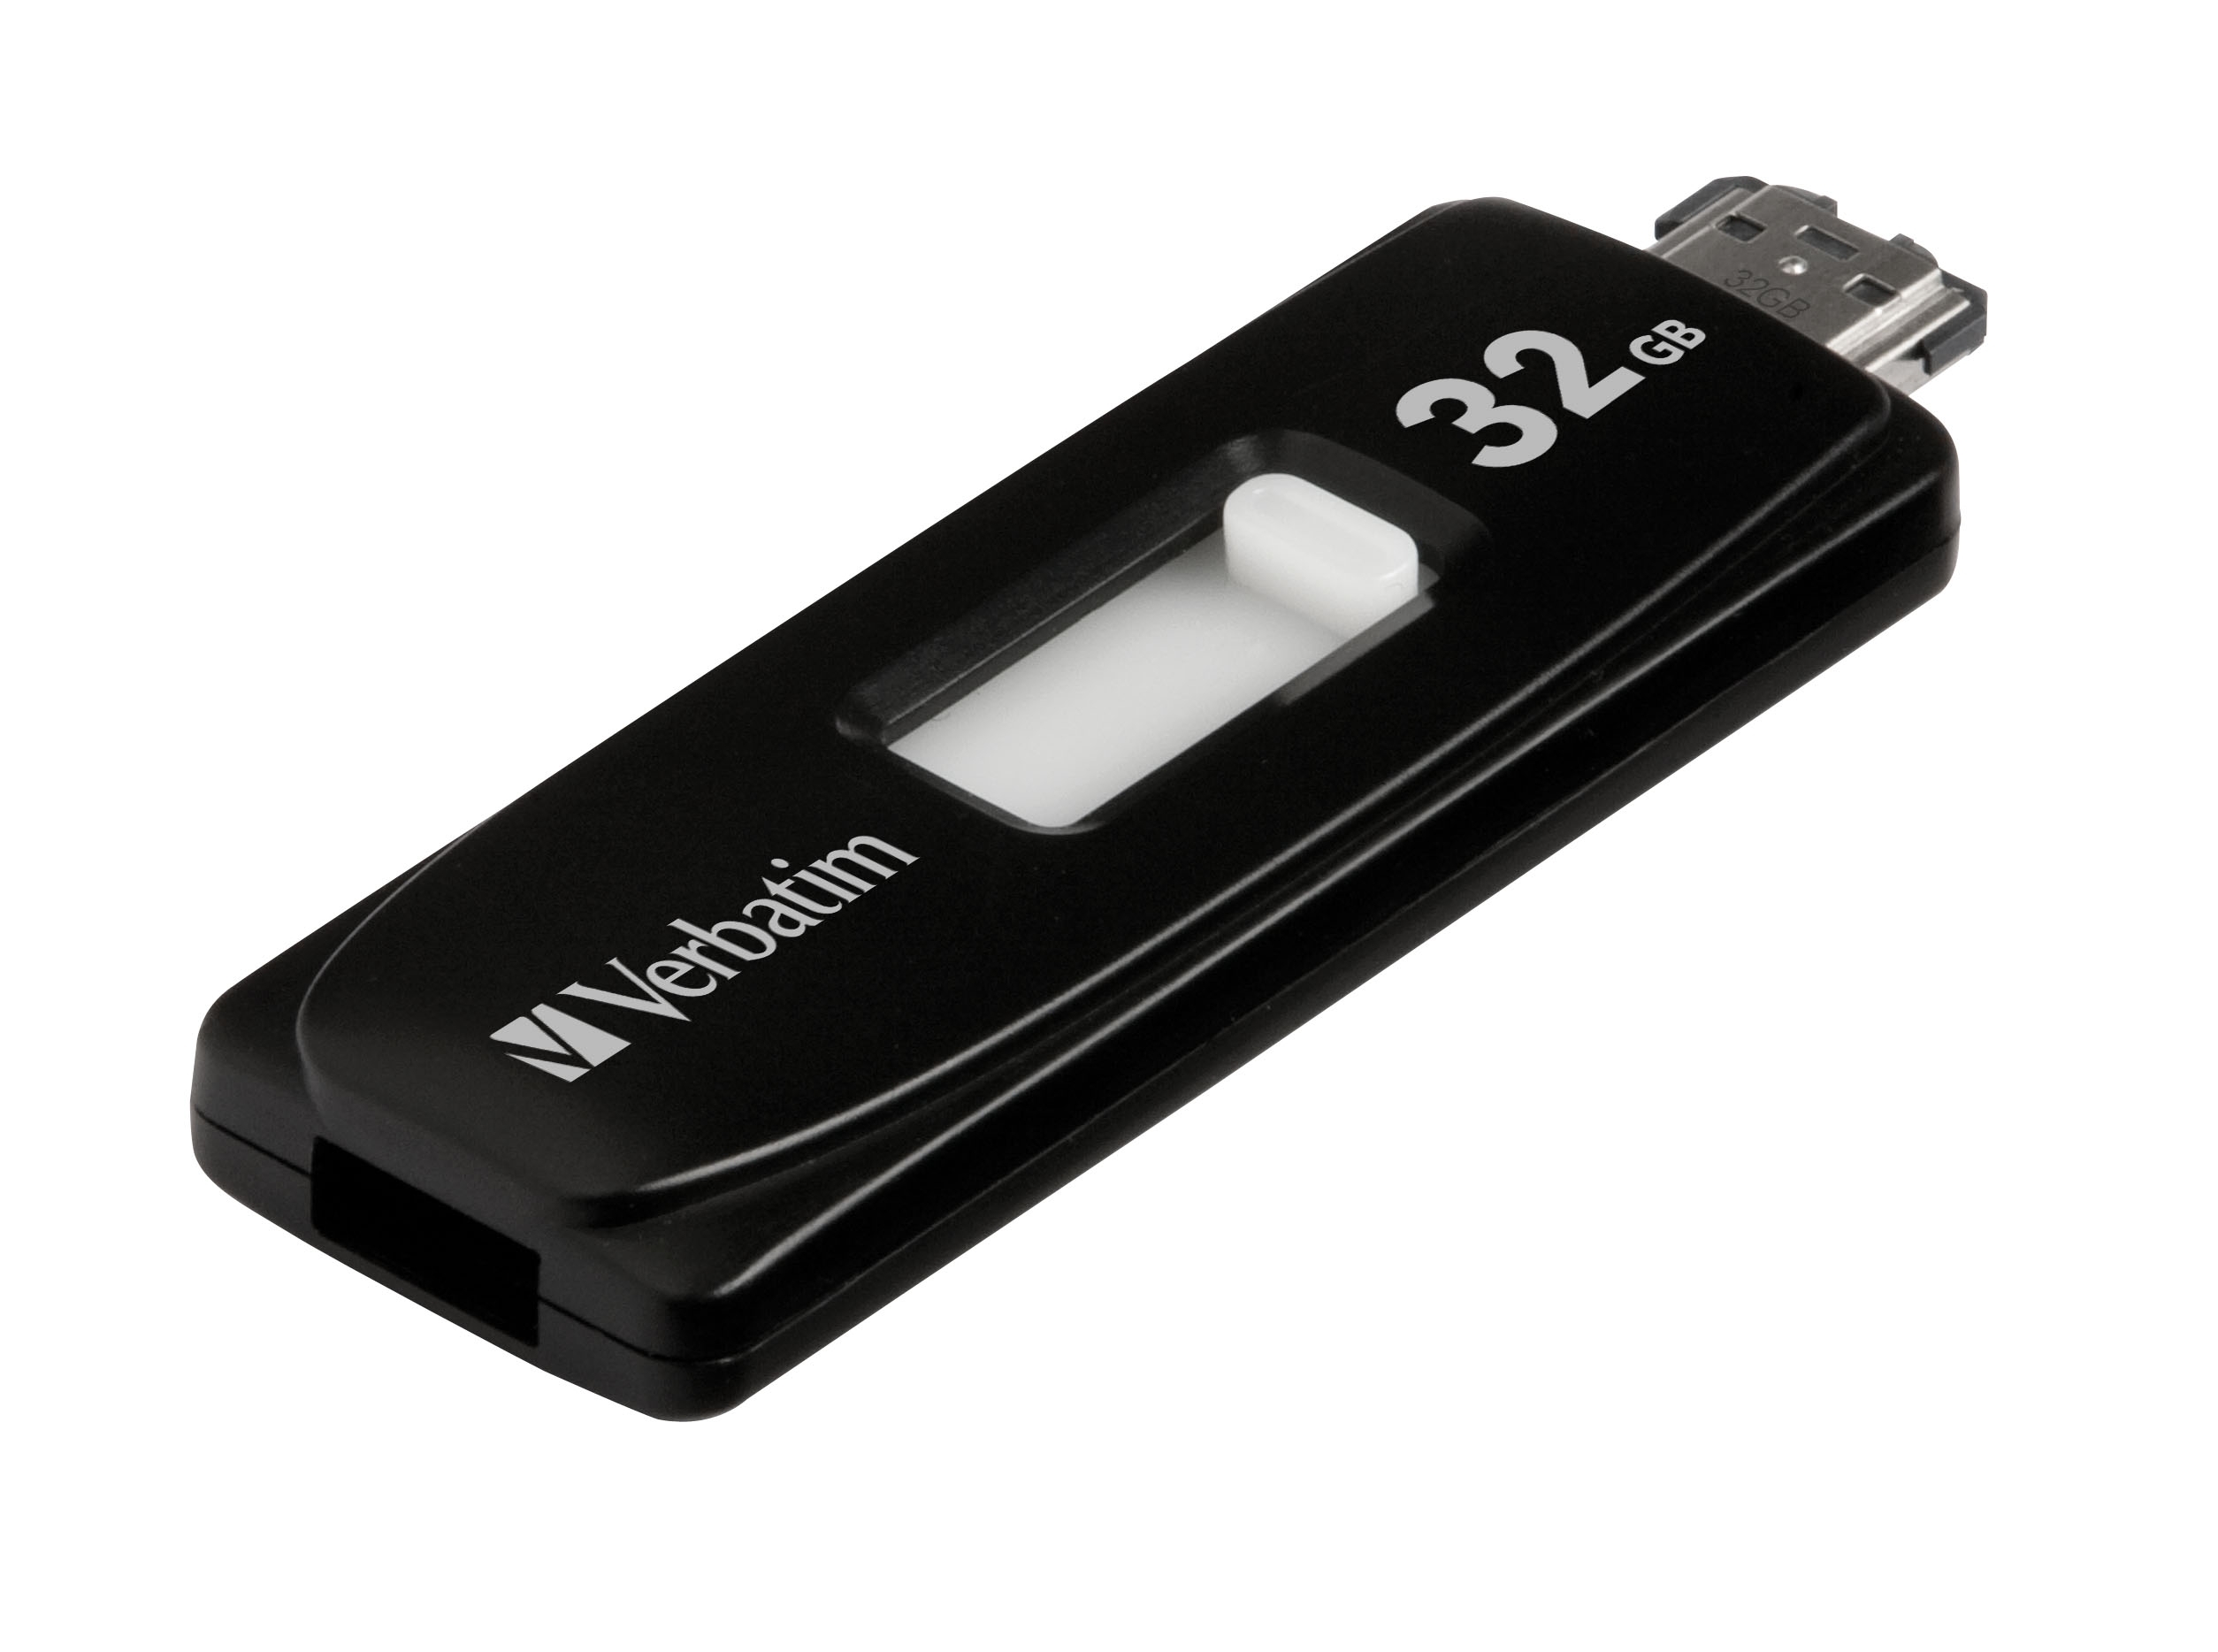 Immagine pubblicata in relazione al seguente contenuto: Verbatim lancia un SSD Combo con interfaccia USB 2.0 ed eSATA | Nome immagine: news11802_2.jpg